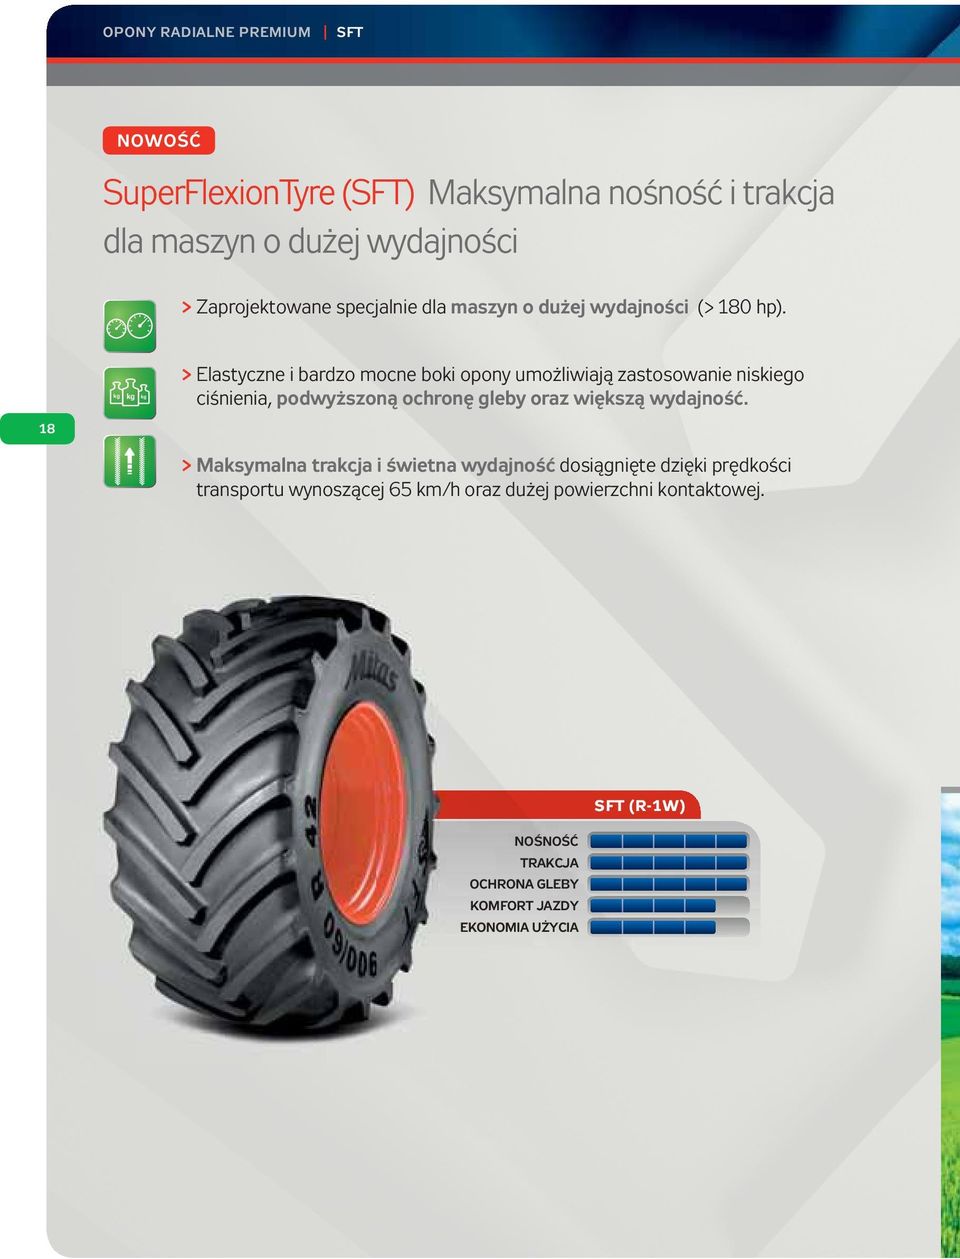 kg kg kg > Elastyczne i bardzo mocne boki opony umożliwiają zastosowanie niskiego ciśnienia, podwyższoną ochronę gleby oraz większą